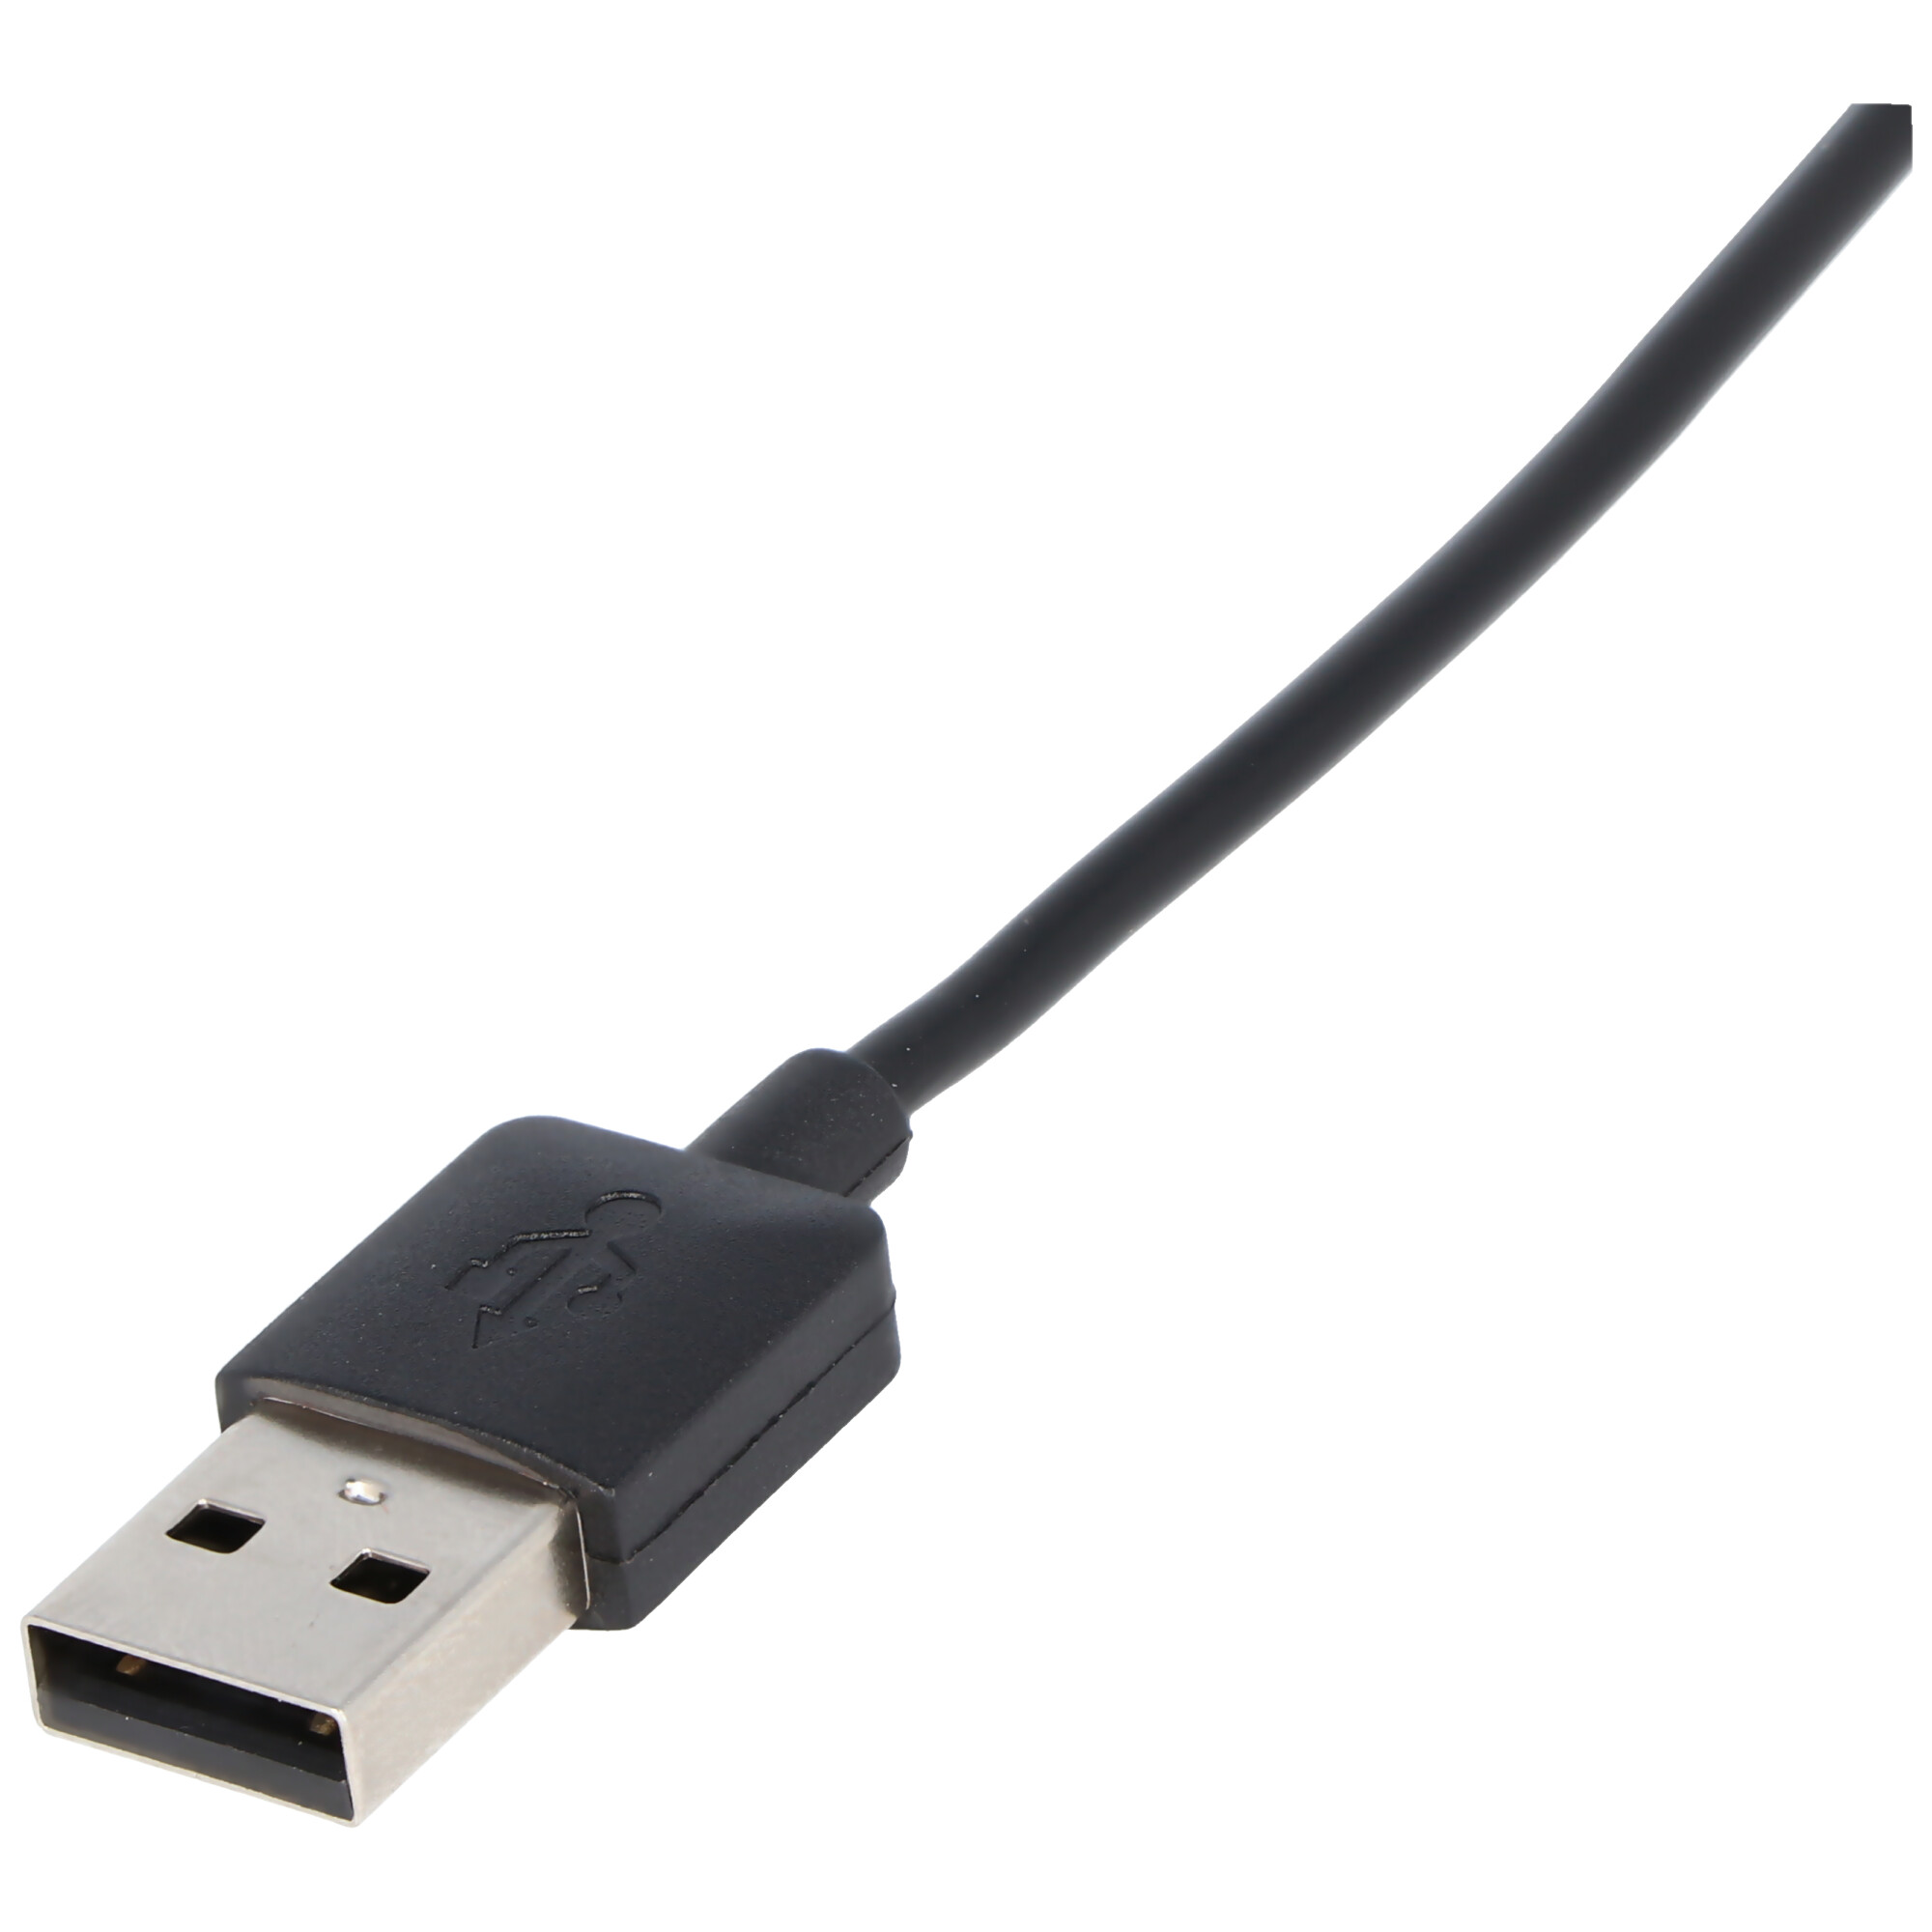 USB-Datenkabel und Ladekabel passend für Garmin Fenix 5, Garmin Fenix 6, Garmin Forerunner 45, Garmin Approach S10